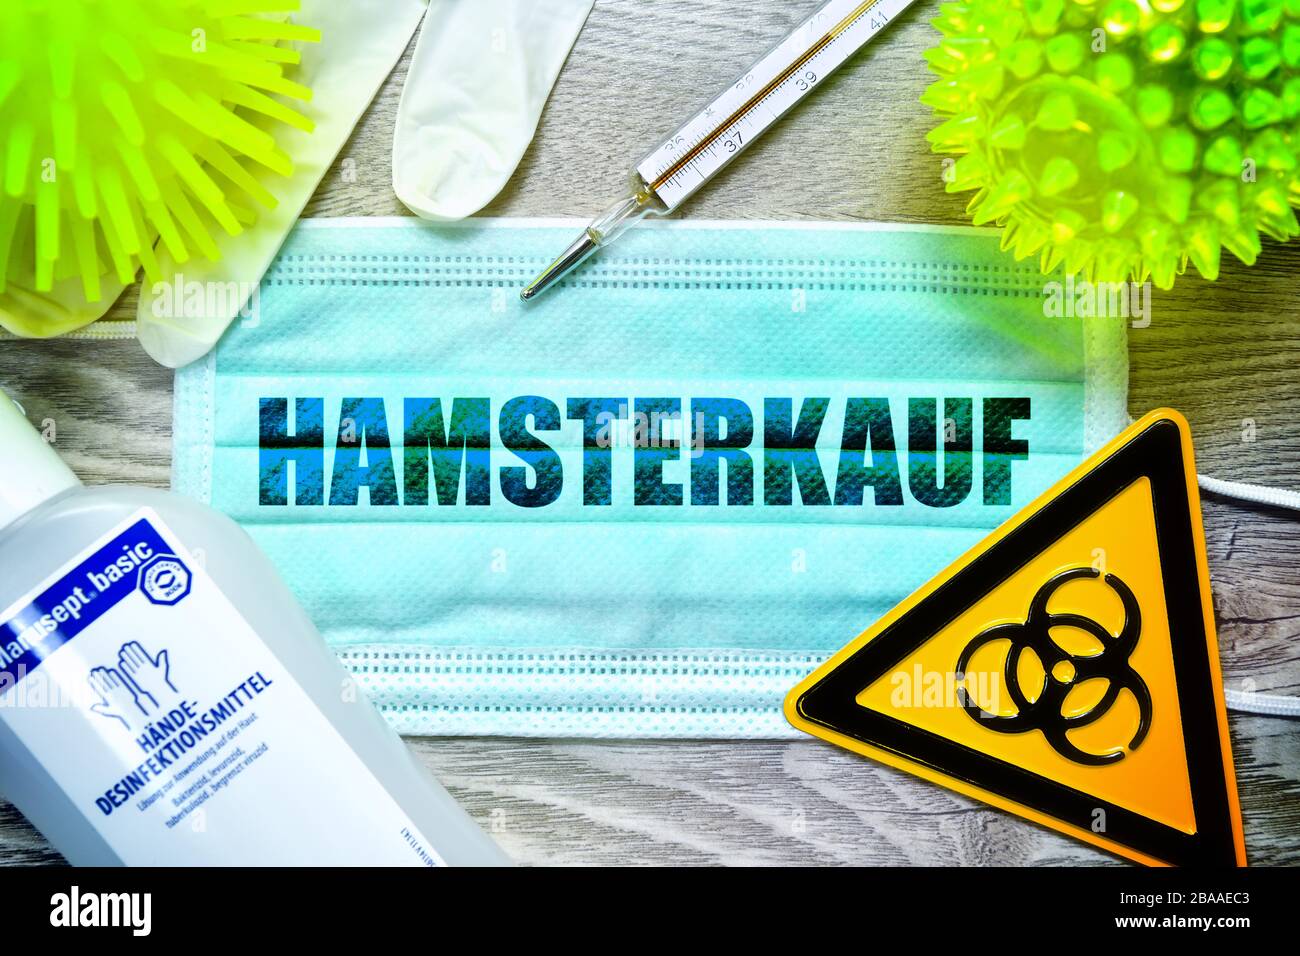 PHOTOMONTAGE, masque avec l'achat d'un hamster d'AVC, signe de danger biologique, gants de protection, thermomètres cliniques et désinfectants sur une table, sym Banque D'Images